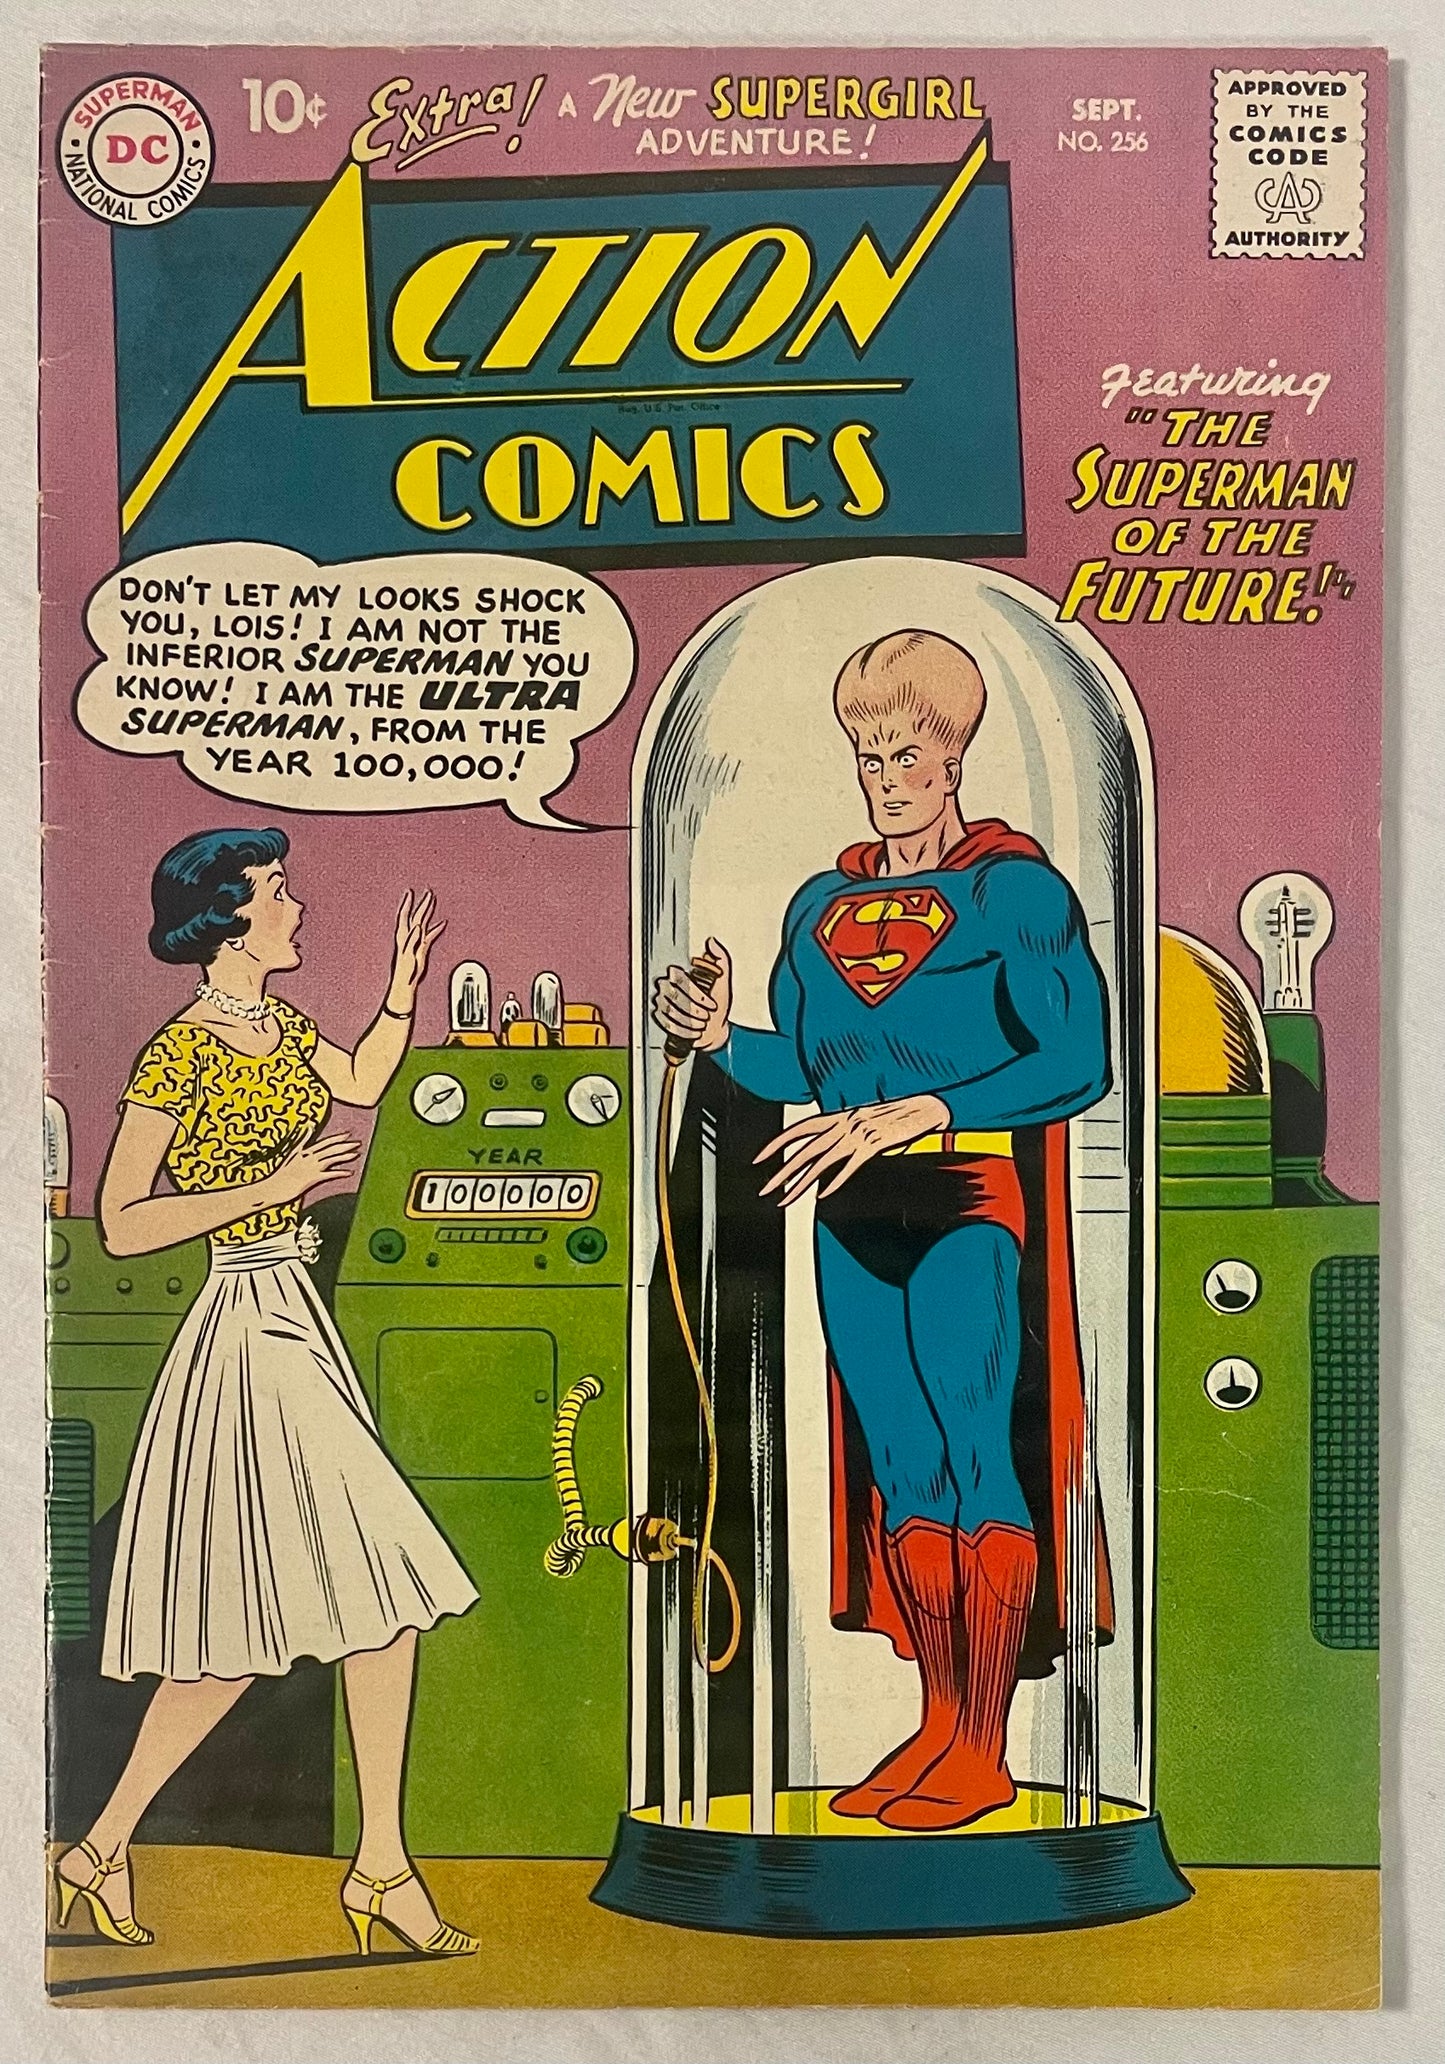 DC Comics Action Comics No. 256